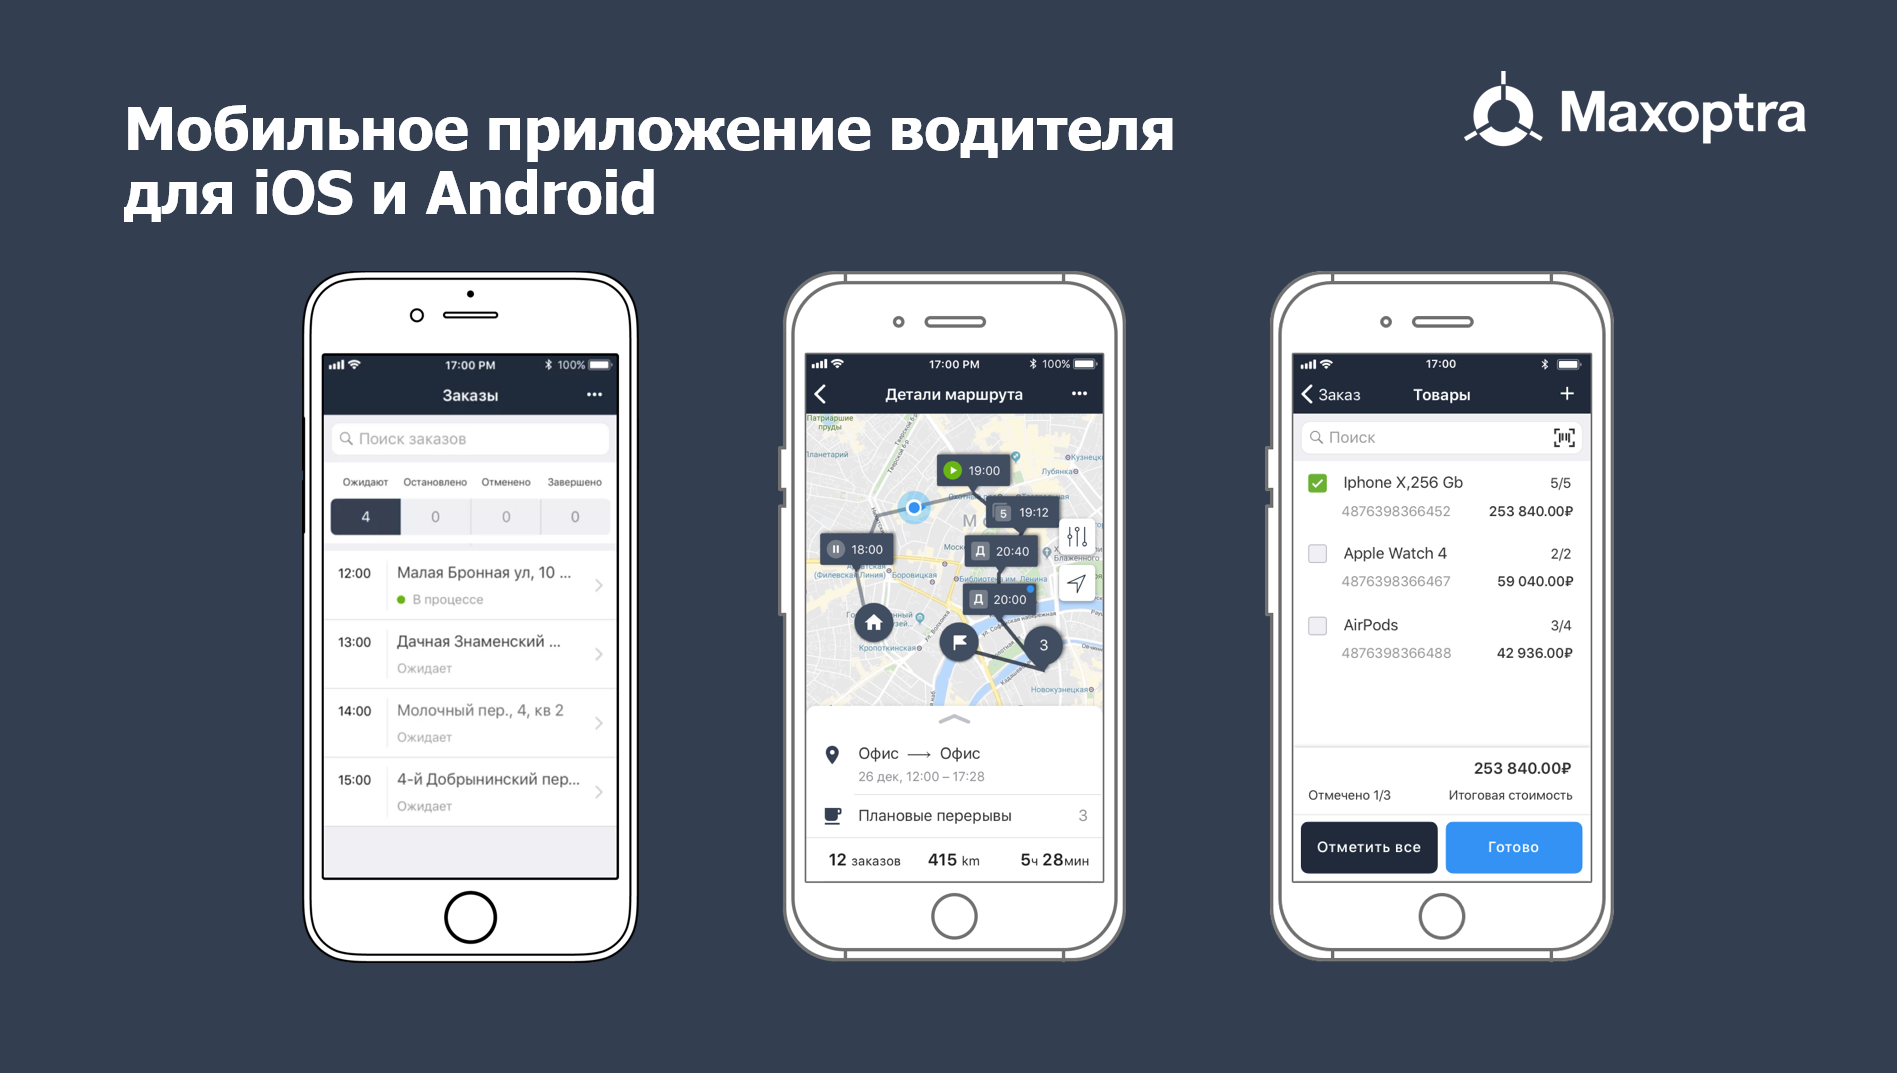 Стационарное приложение. Максоптра приложение. Maxoptra Интерфейс программа. Мобильное приложение водителя. Окно мобильного приложения.